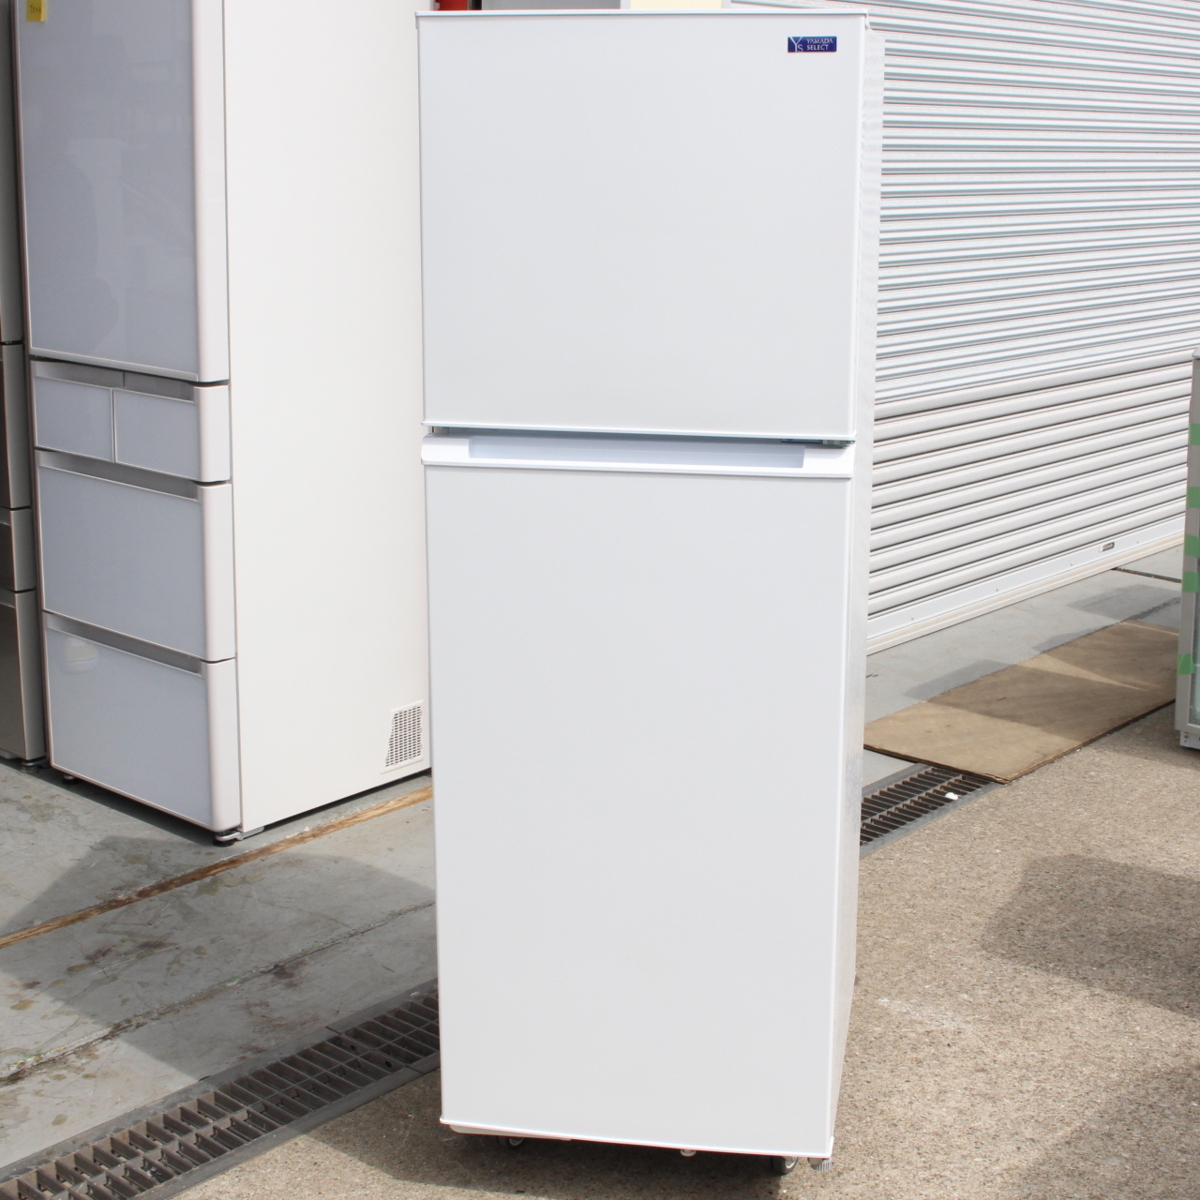 YAMADA SELECT ノンフロン冷凍冷蔵庫 YRZ-F23G1 225L 2ドア  2019年製